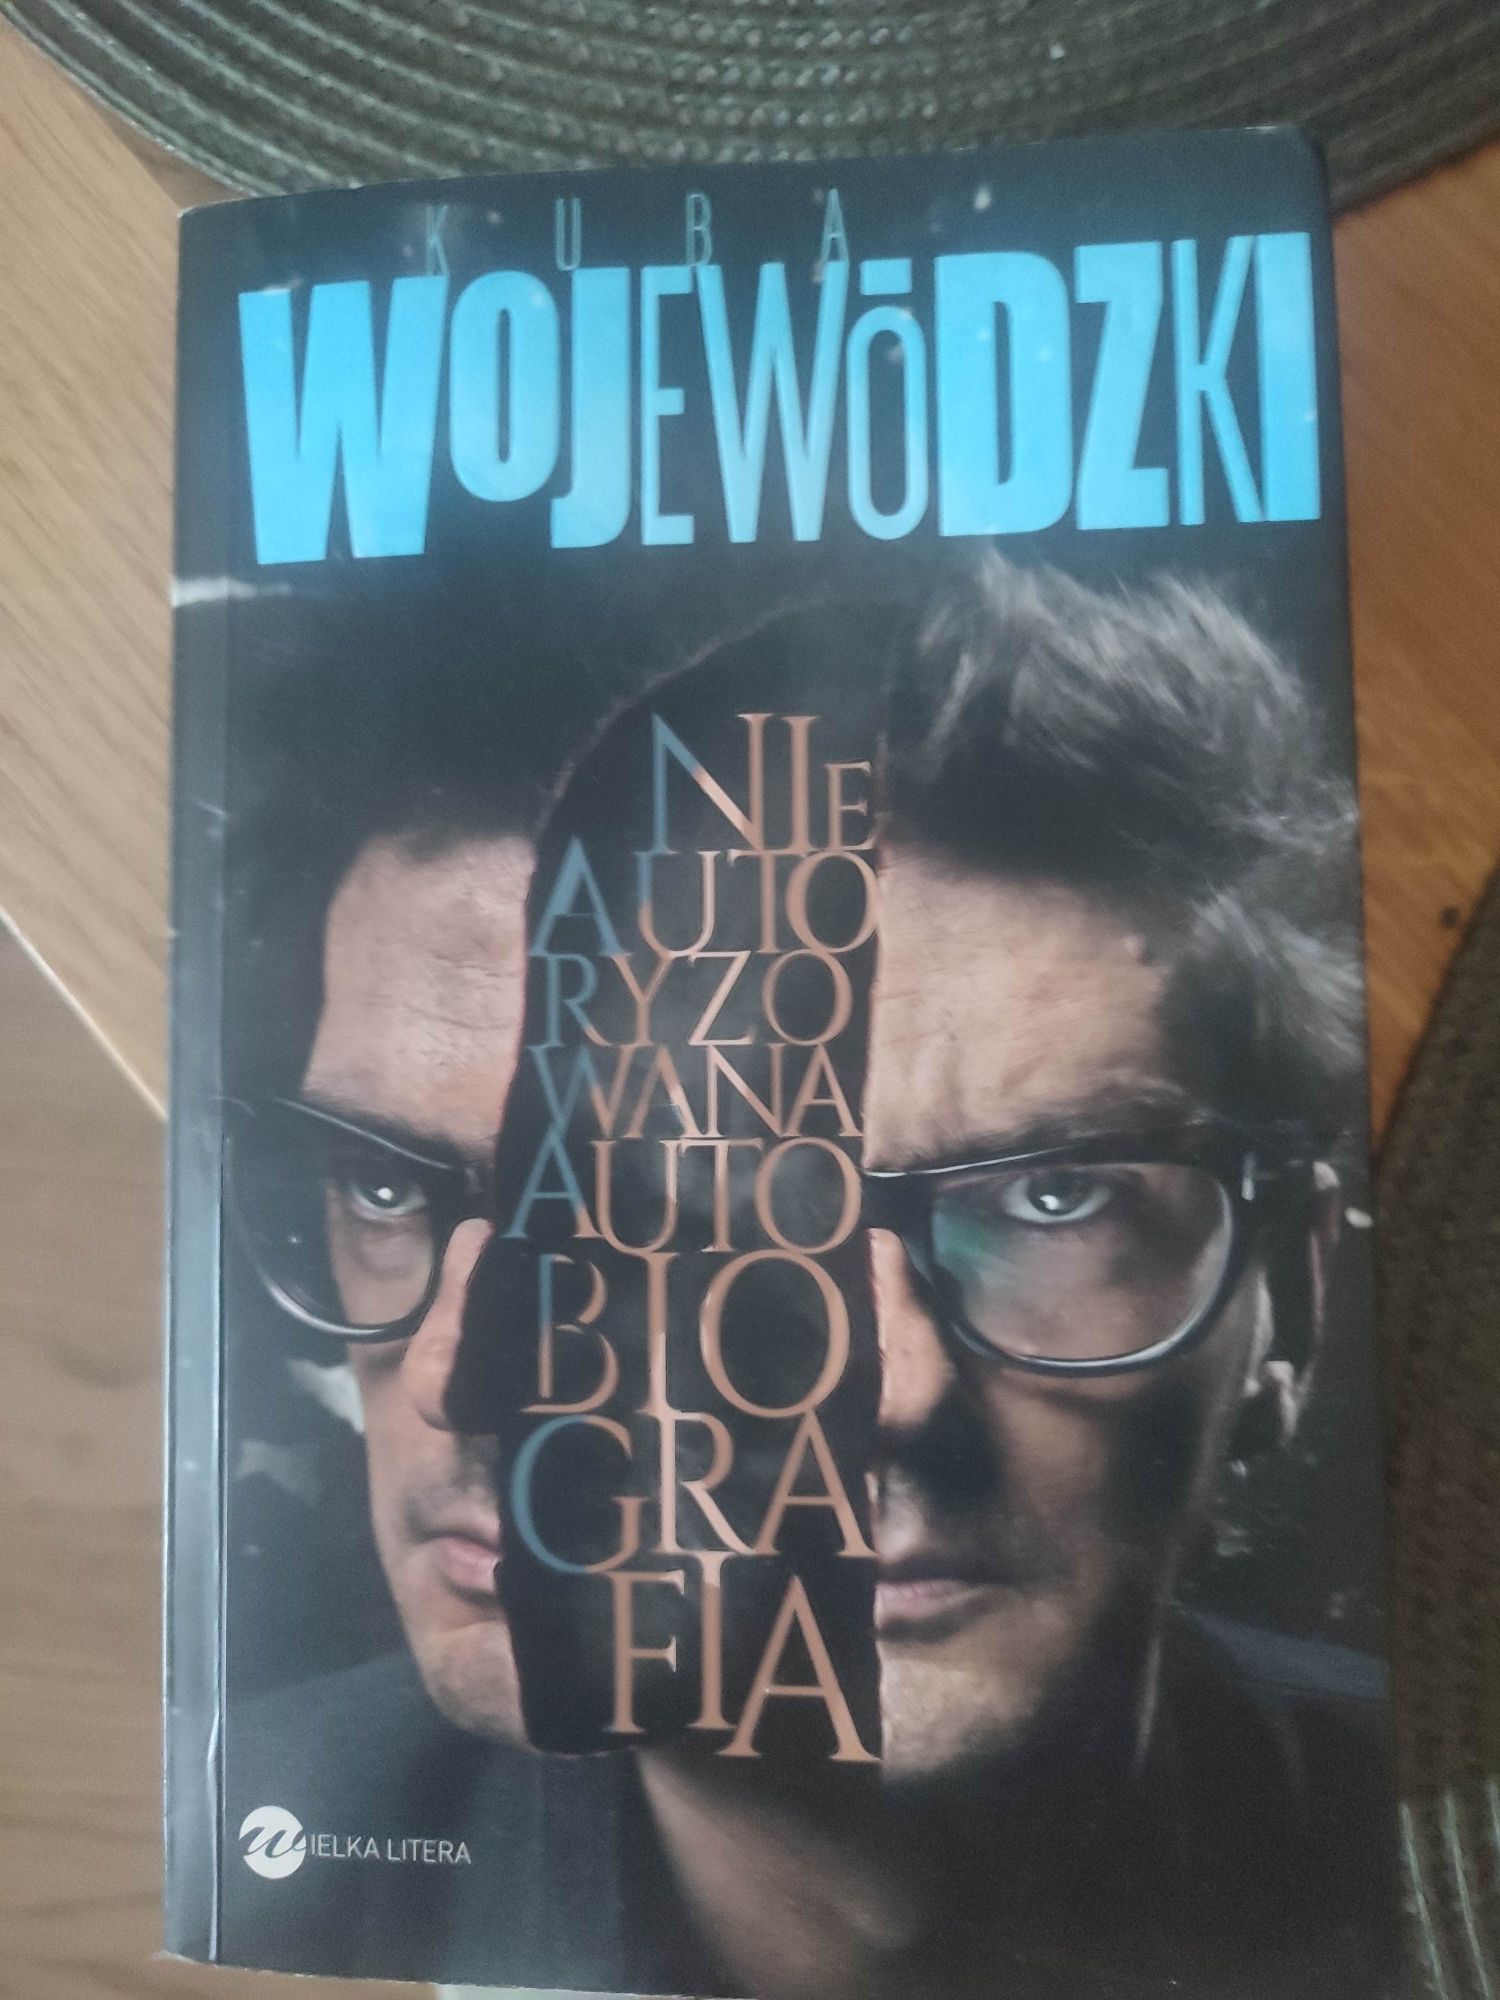 Książka Wojewódzki Nieautoryzowana Autobiografia